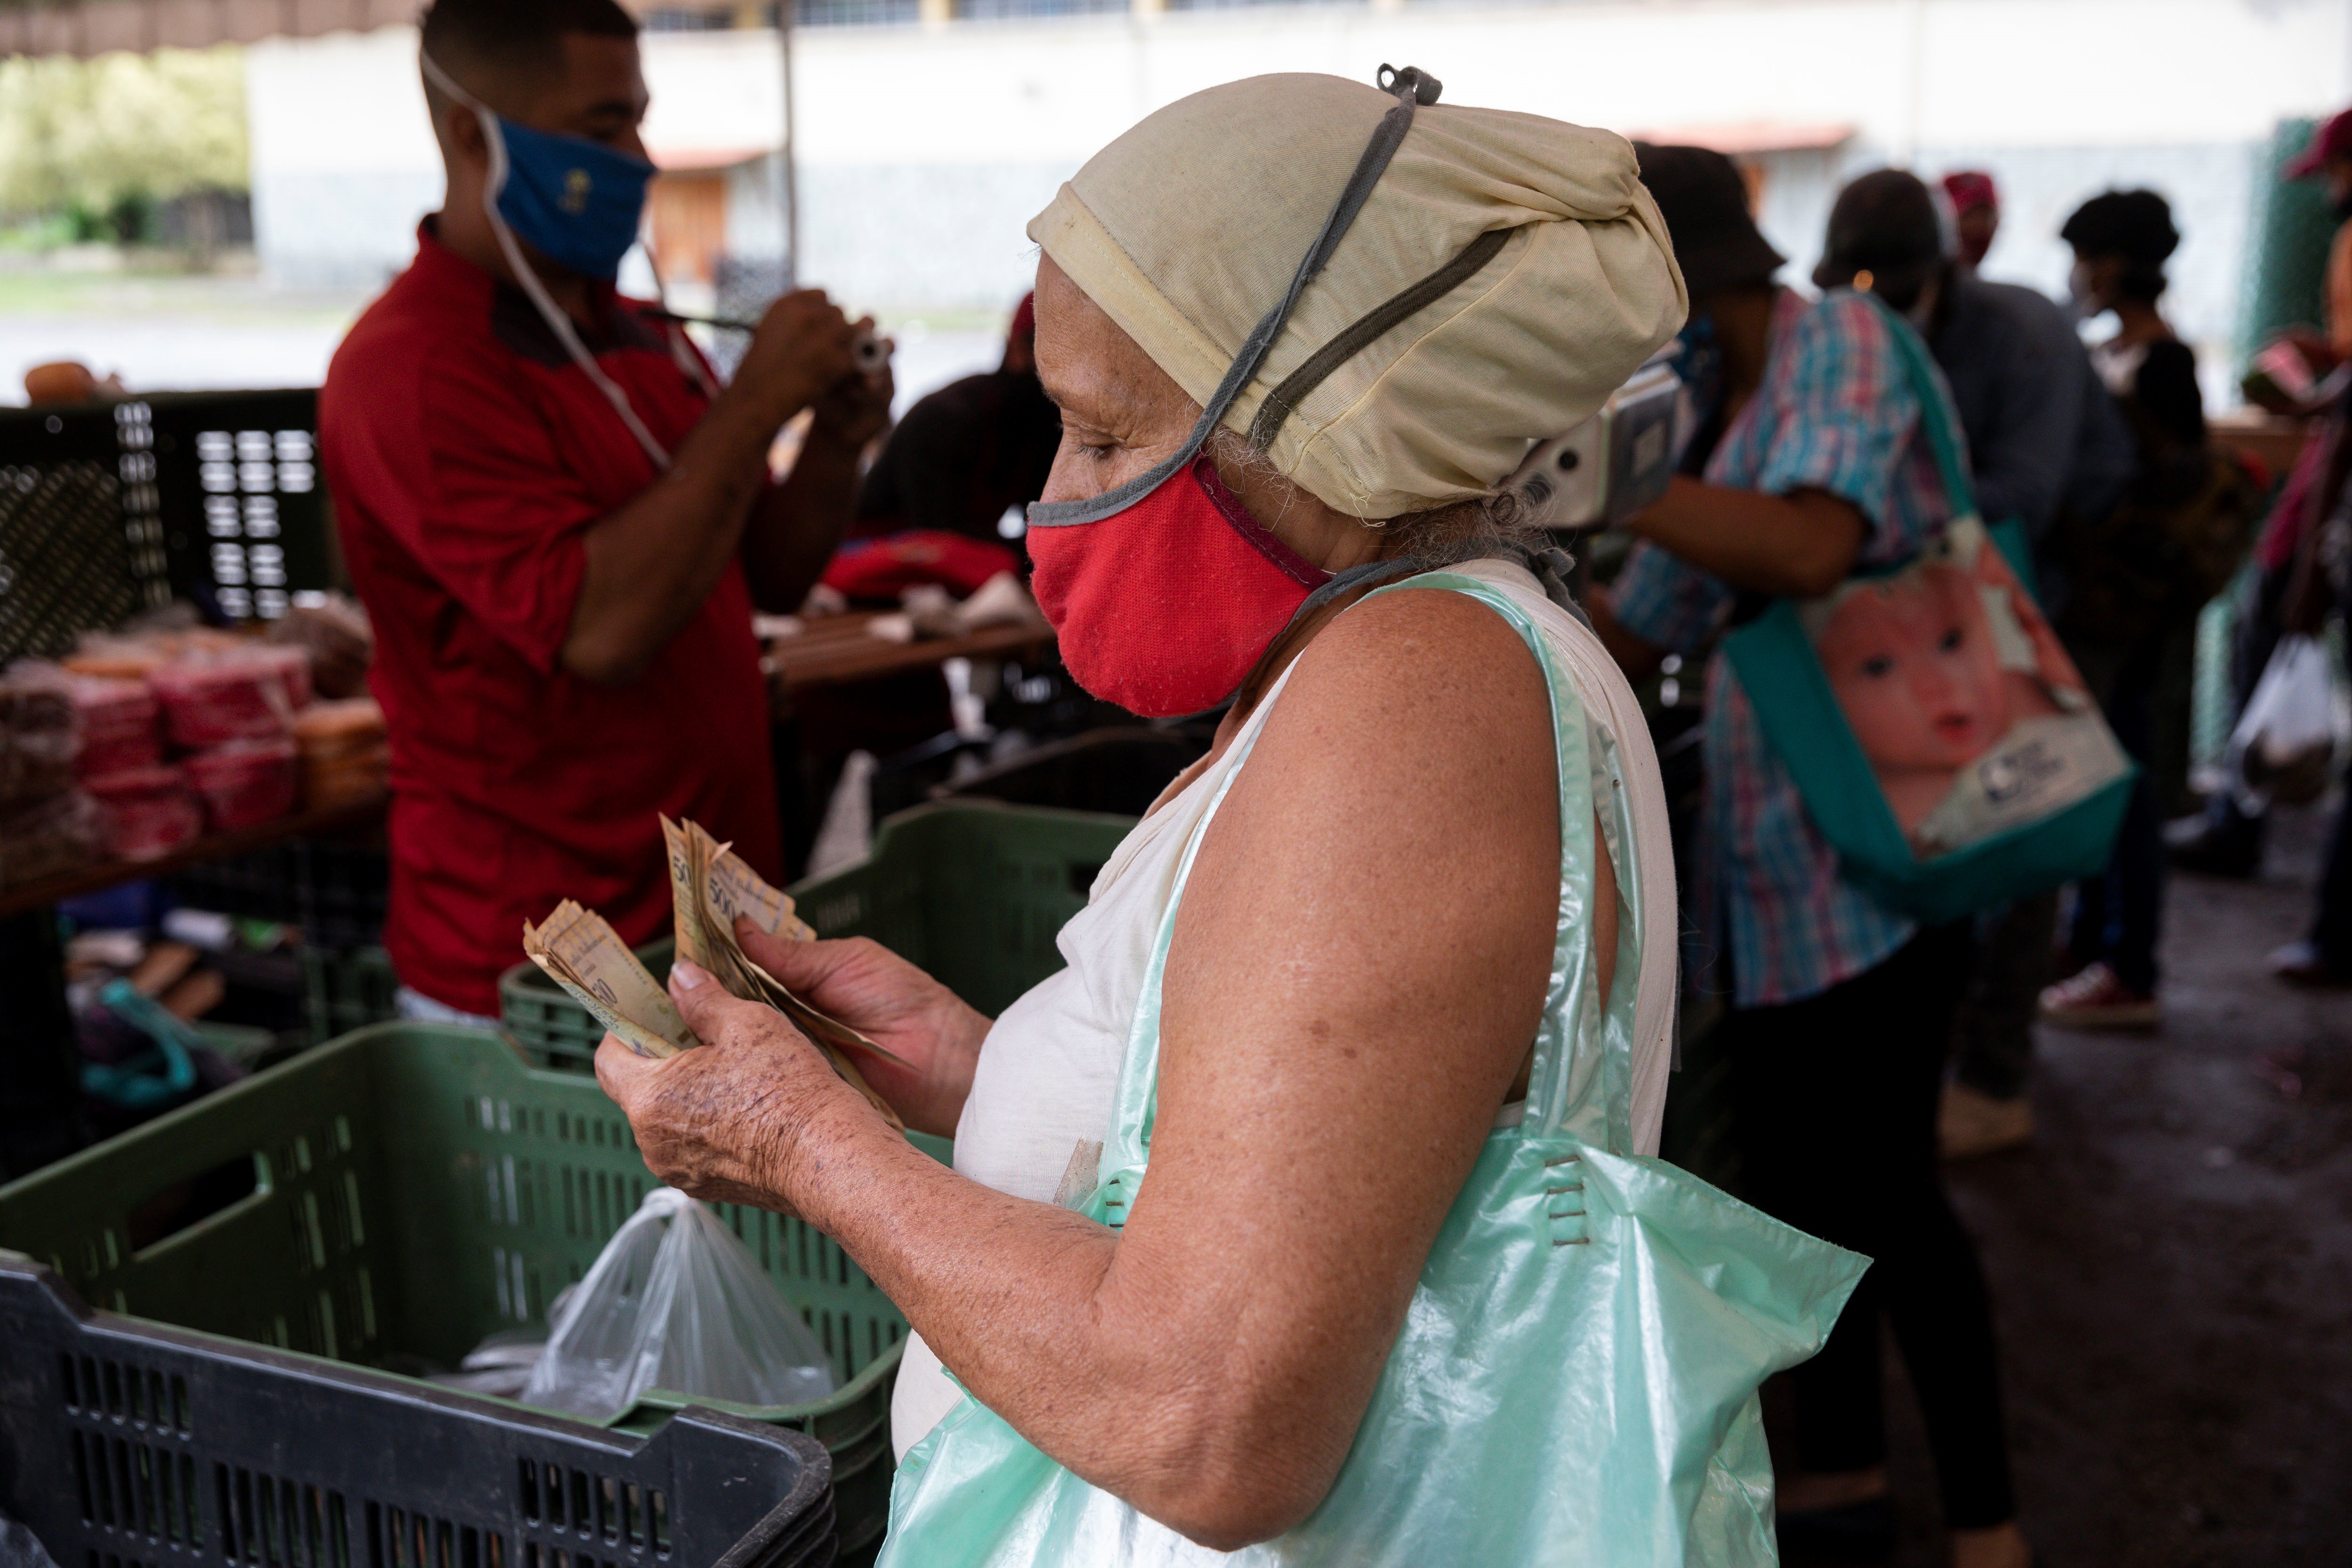 Comercialización de alimentos en Venezuela, negocio rentable para organizaciones criminales